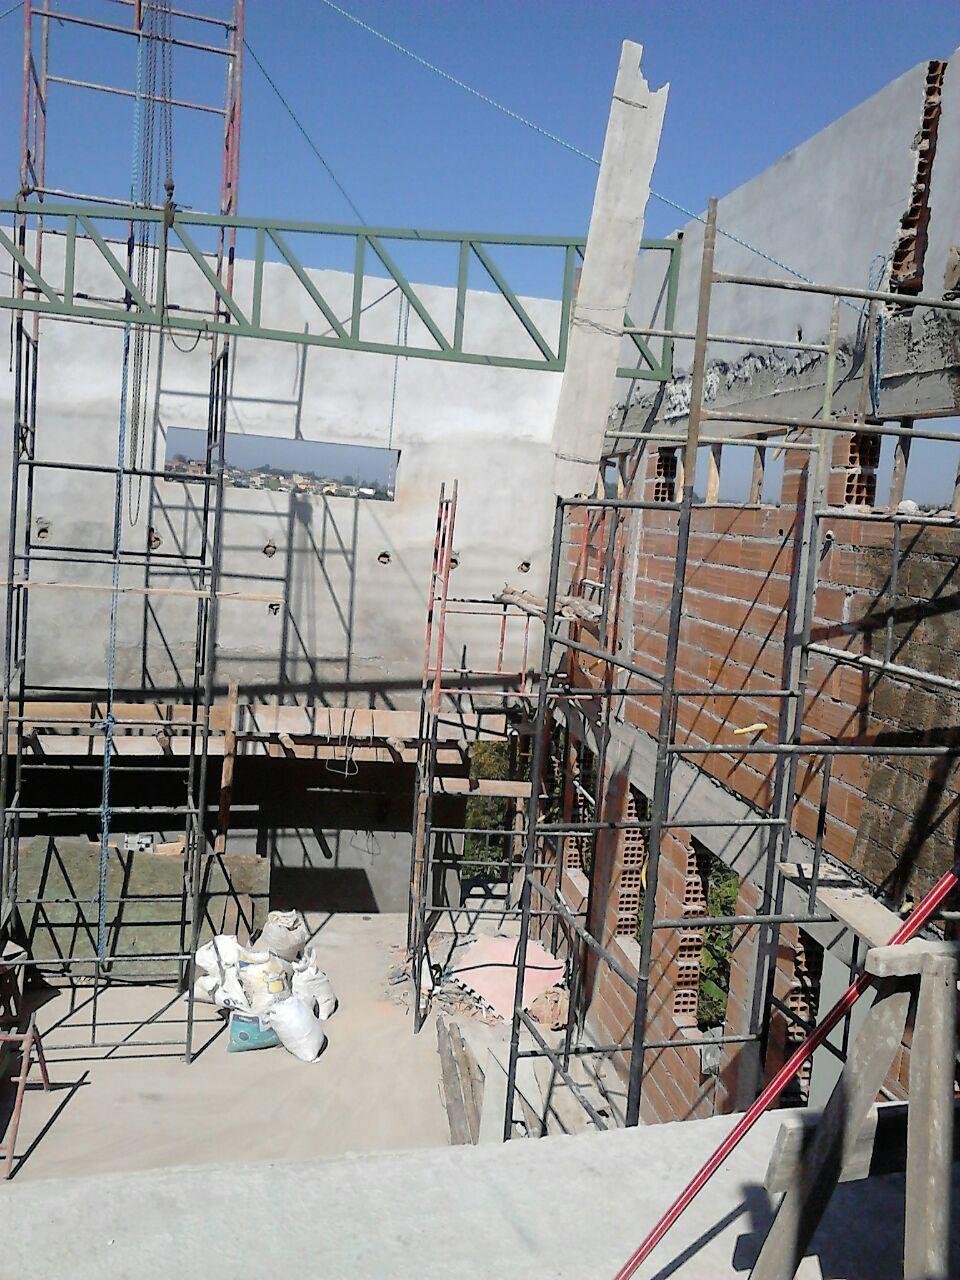 Construções e Reformas no Taboão da Serra